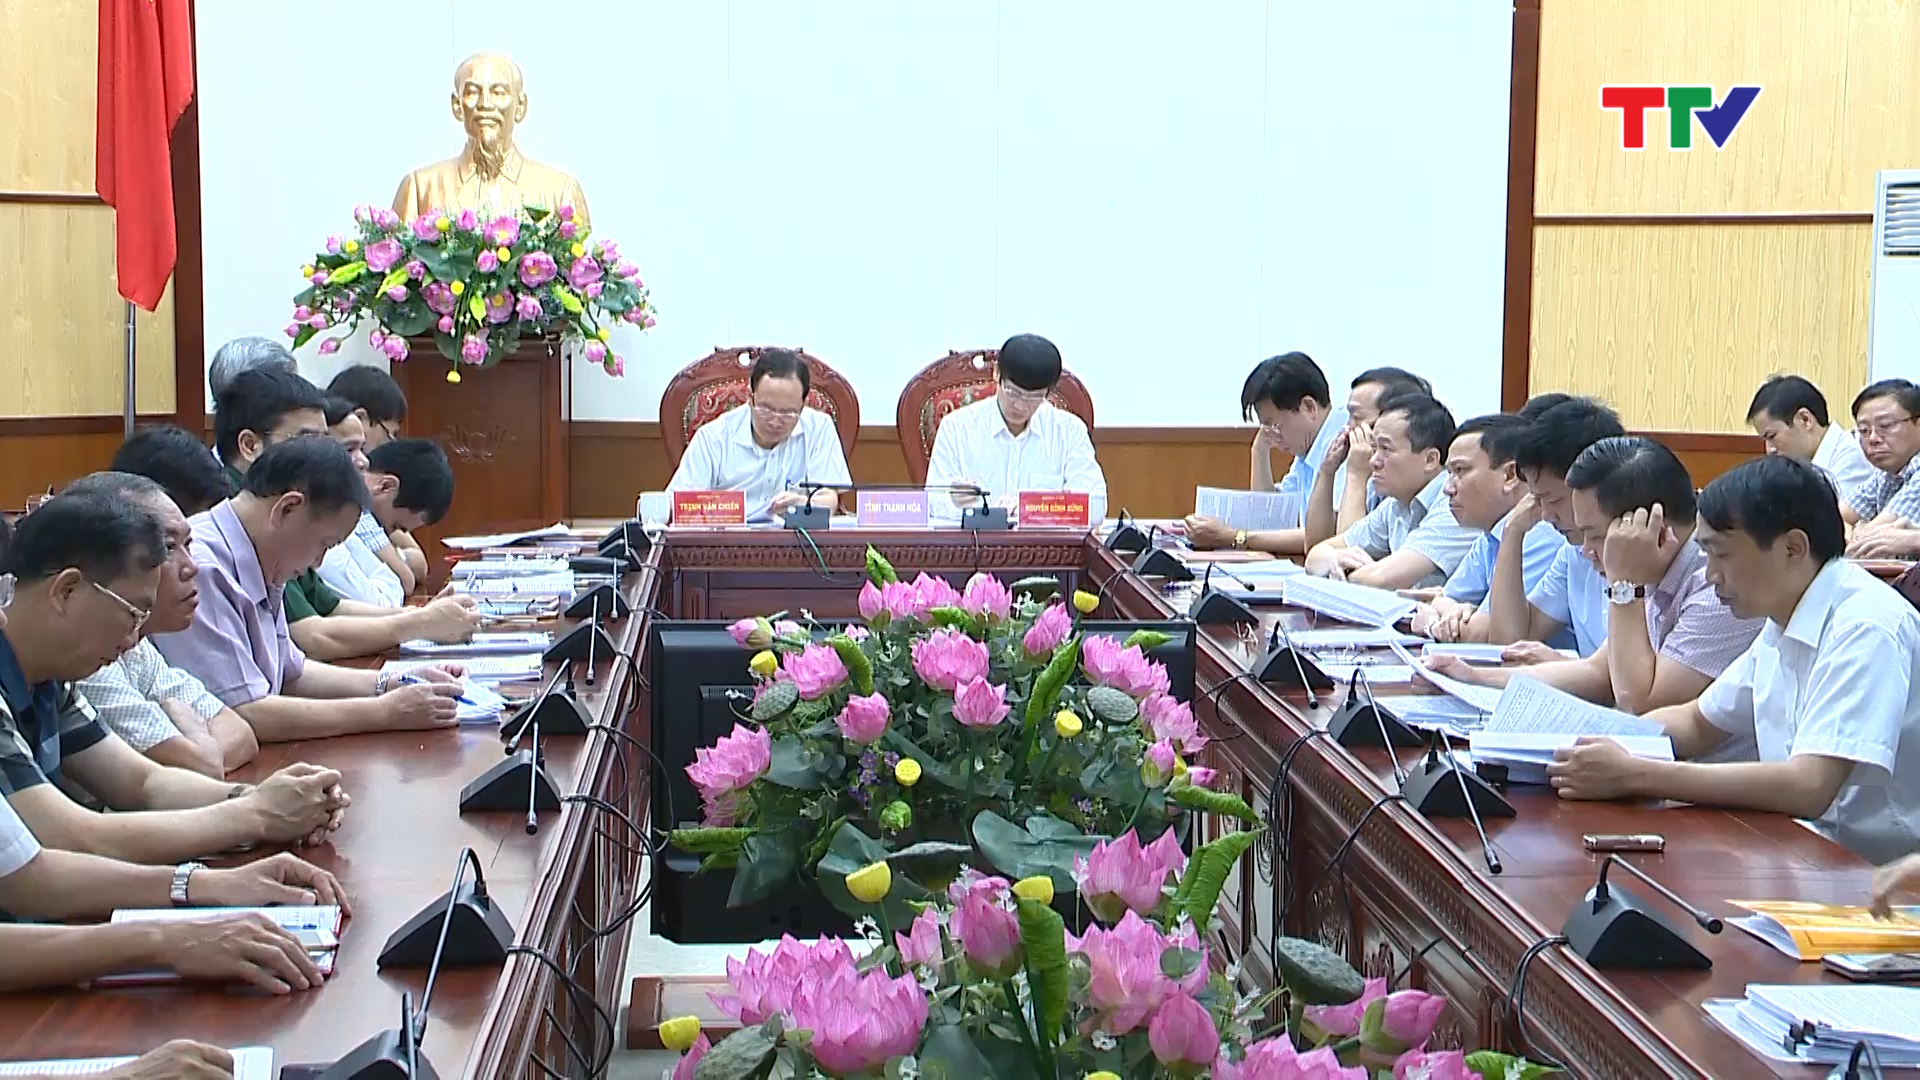 Lãnh đạo tỉnh Thanh Hoá tham dự hội nghị trực tuyến toàn quốc đánh giá tình hình kinh tế - xã hội 6 tháng đầu năm, triển khai nhiệm vụ 6 tháng cuối năm